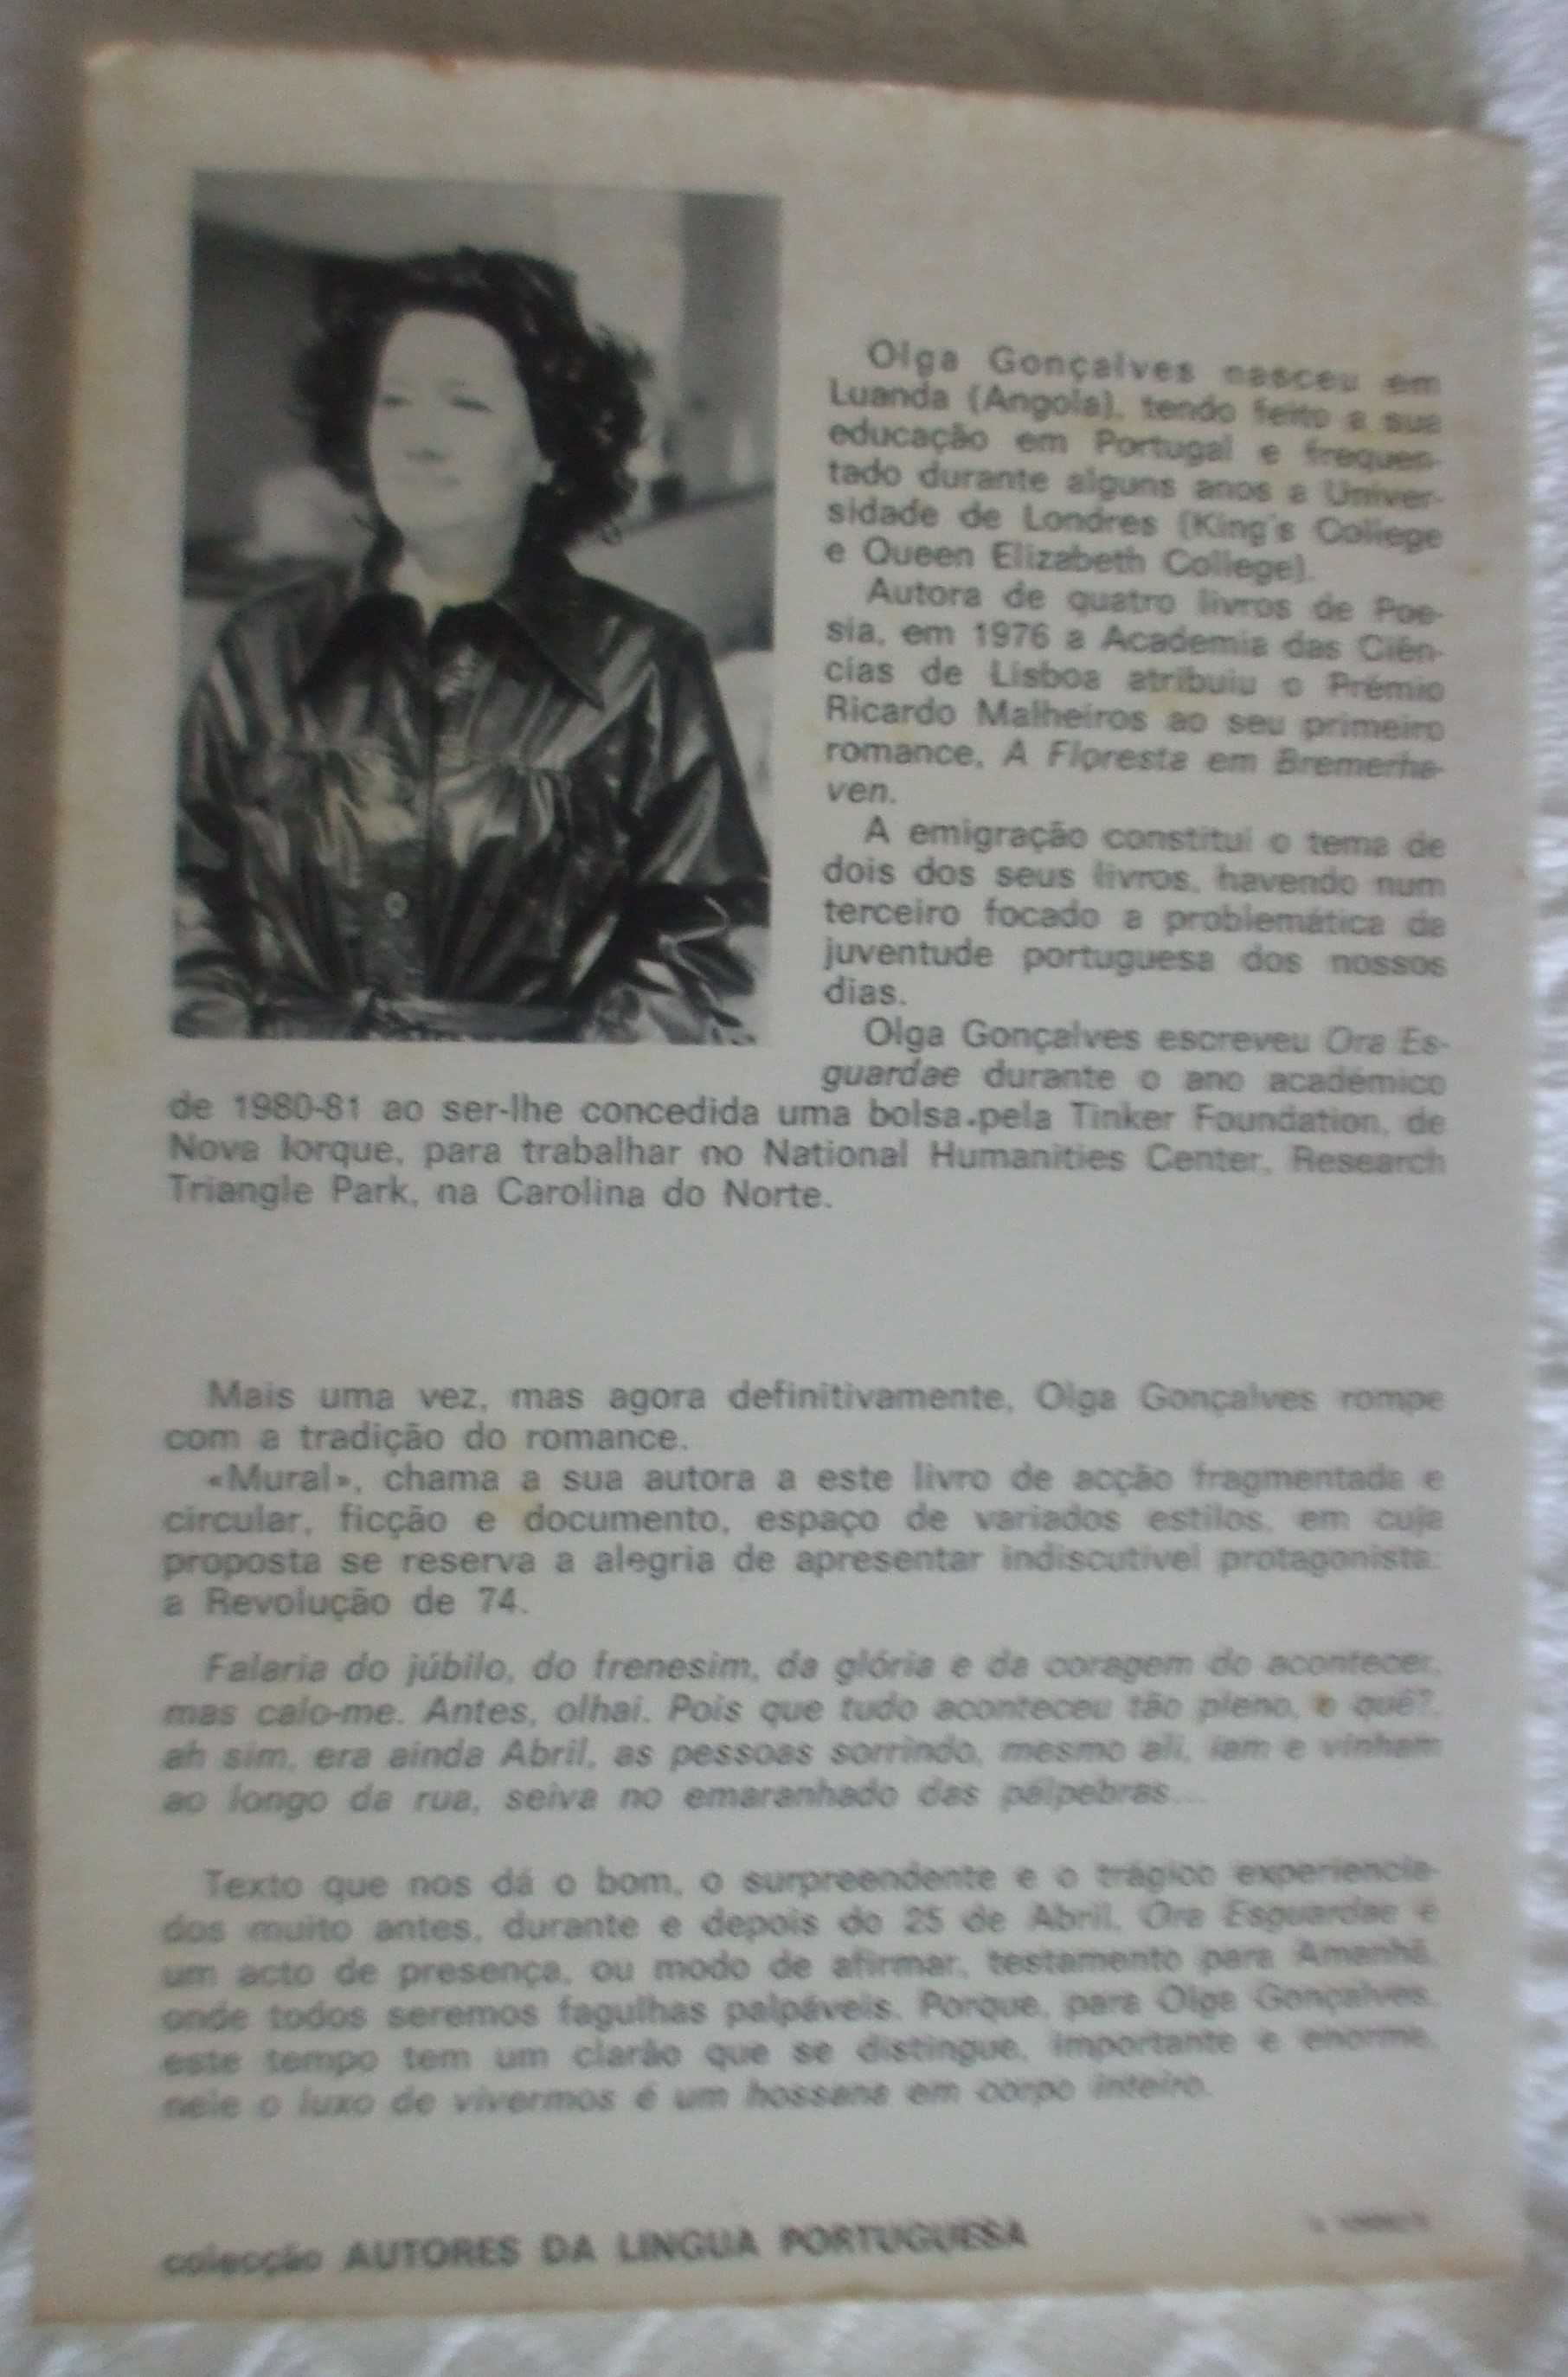 Ora esguardae, Olga Gonçalves